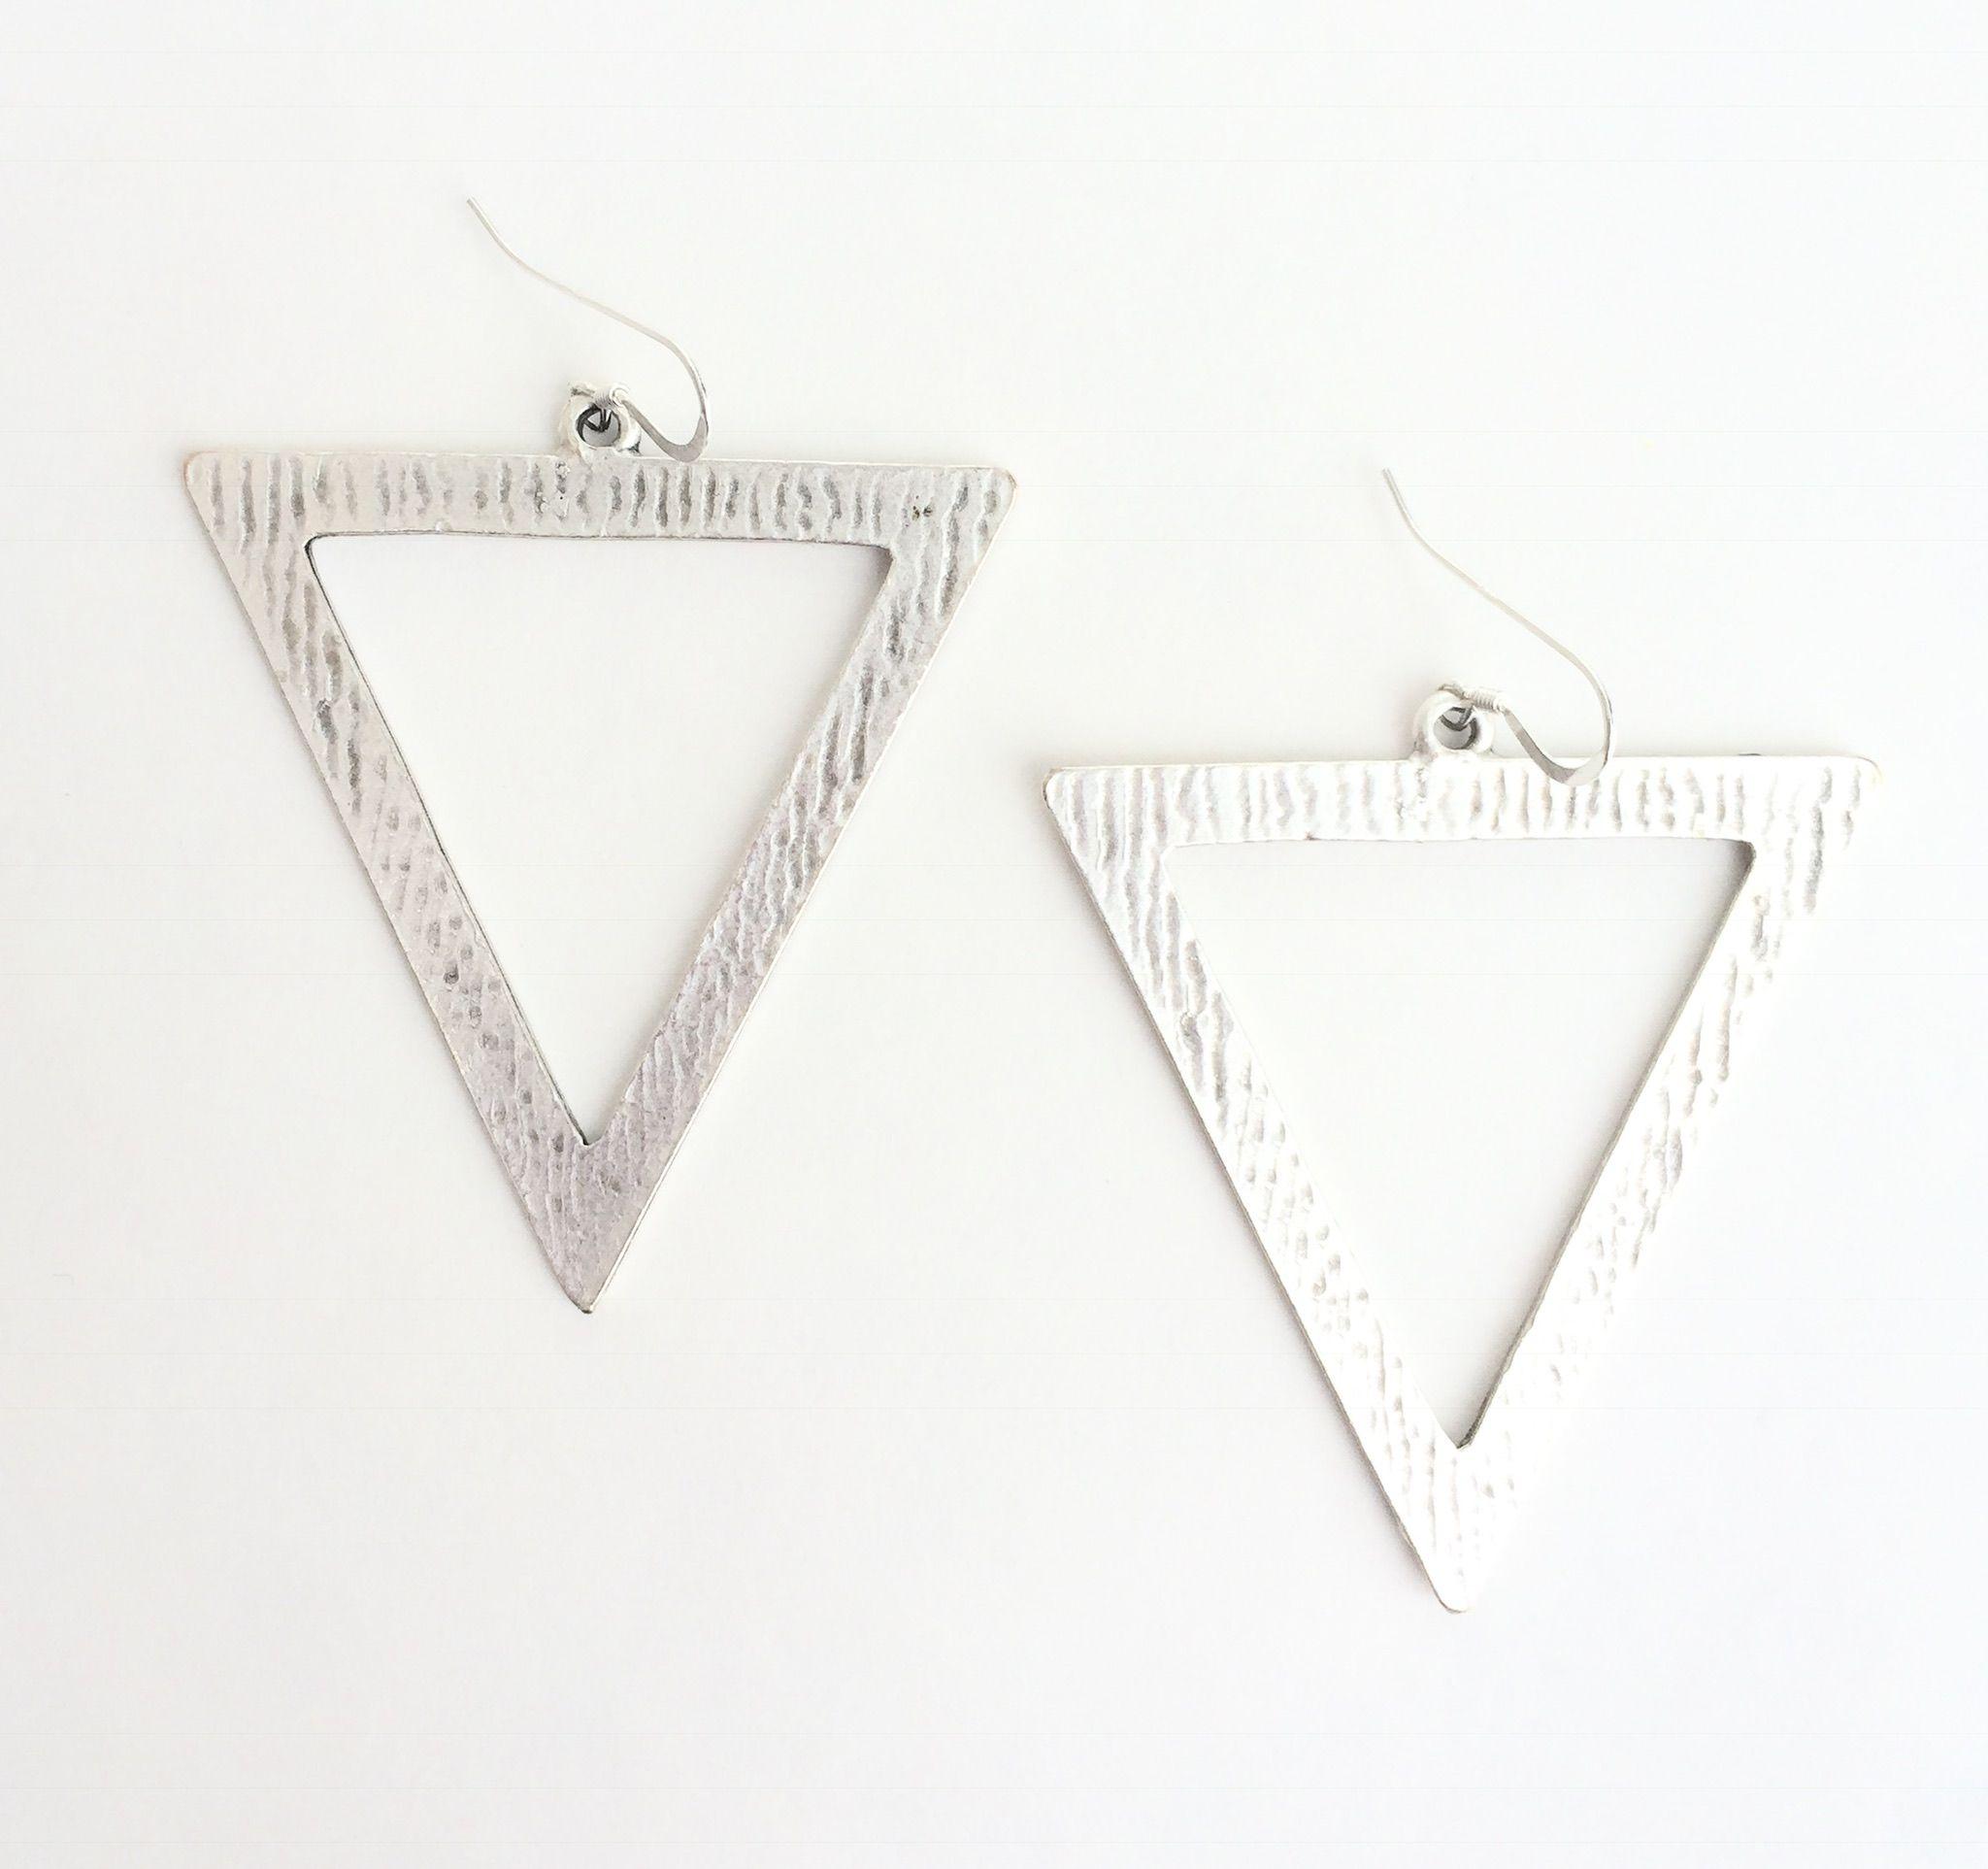 Upside Down Triangle Logo - Upside Down Triangle Earrings